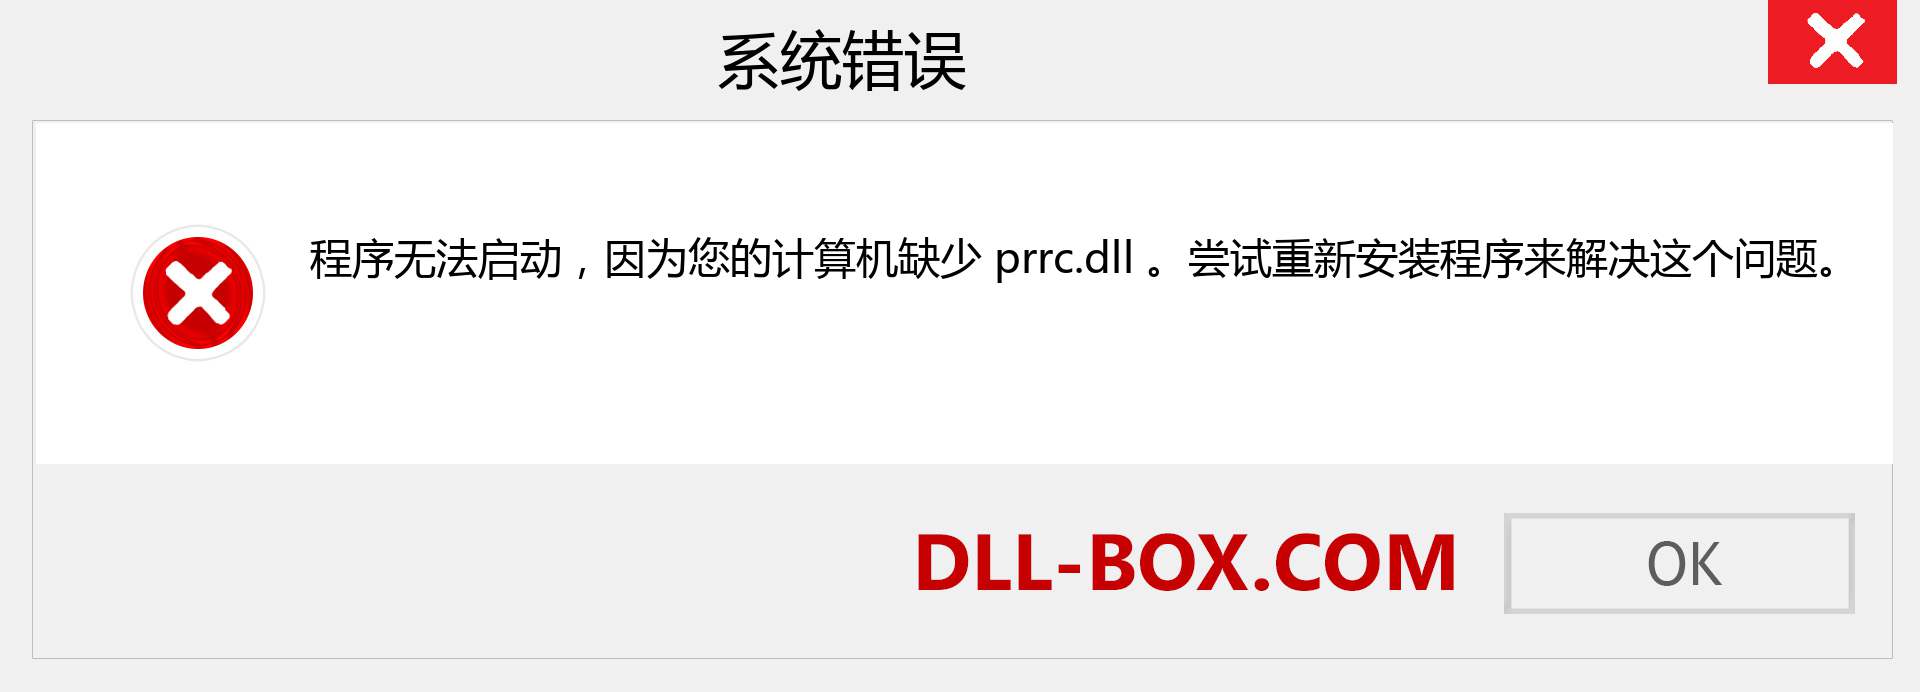 prrc.dll 文件丢失？。 适用于 Windows 7、8、10 的下载 - 修复 Windows、照片、图像上的 prrc dll 丢失错误